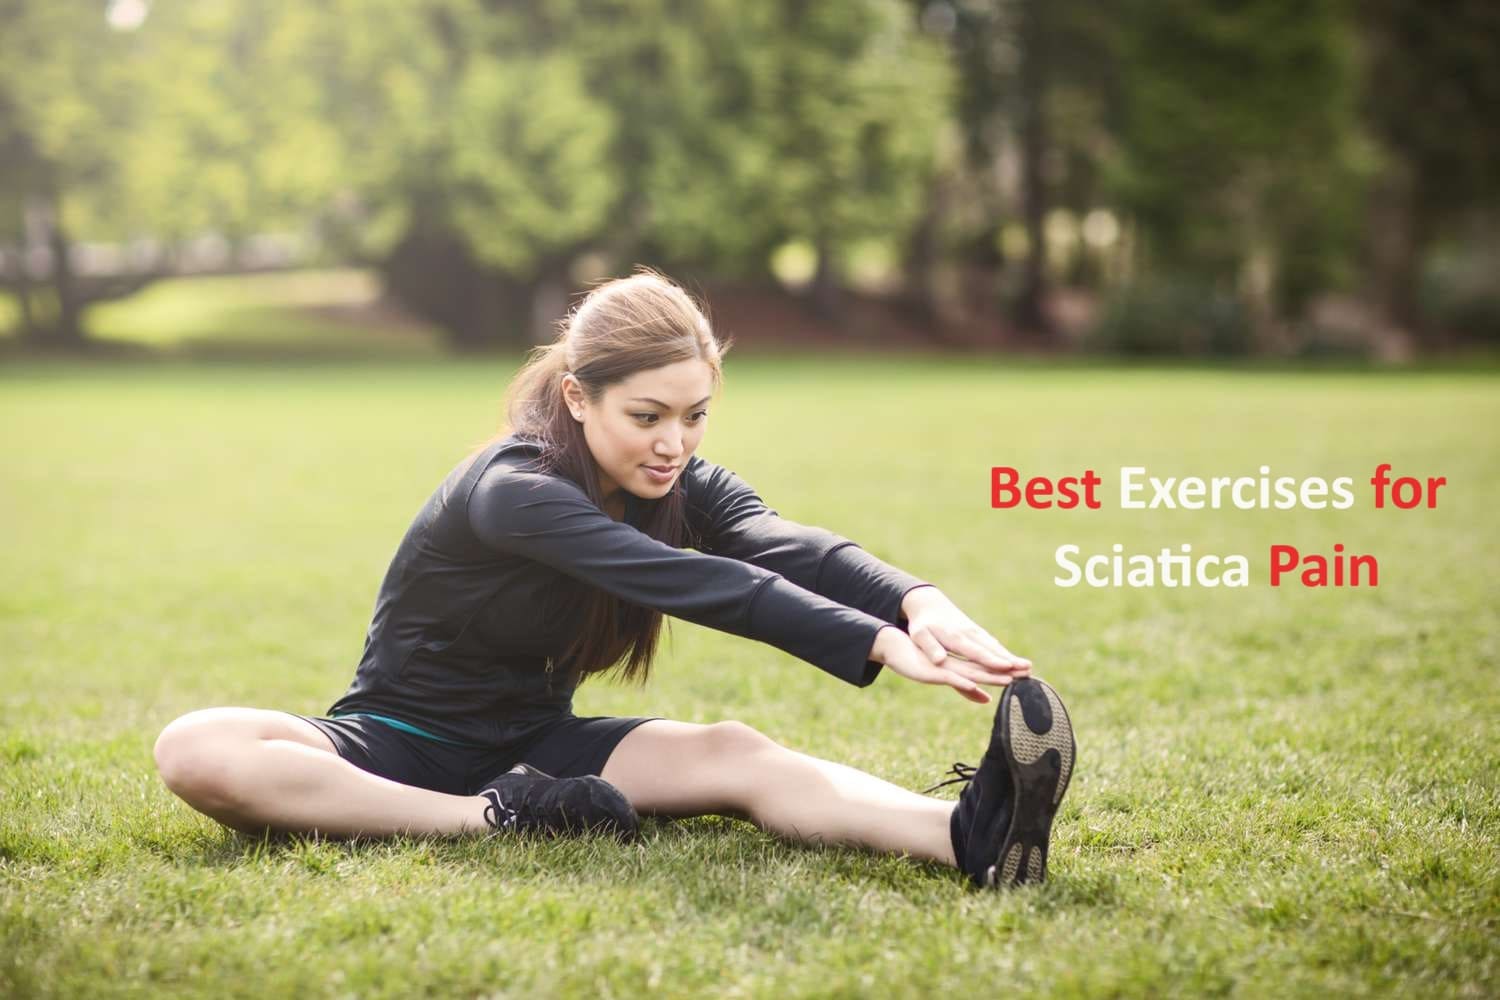 Best Exercises for Sciatica Pain